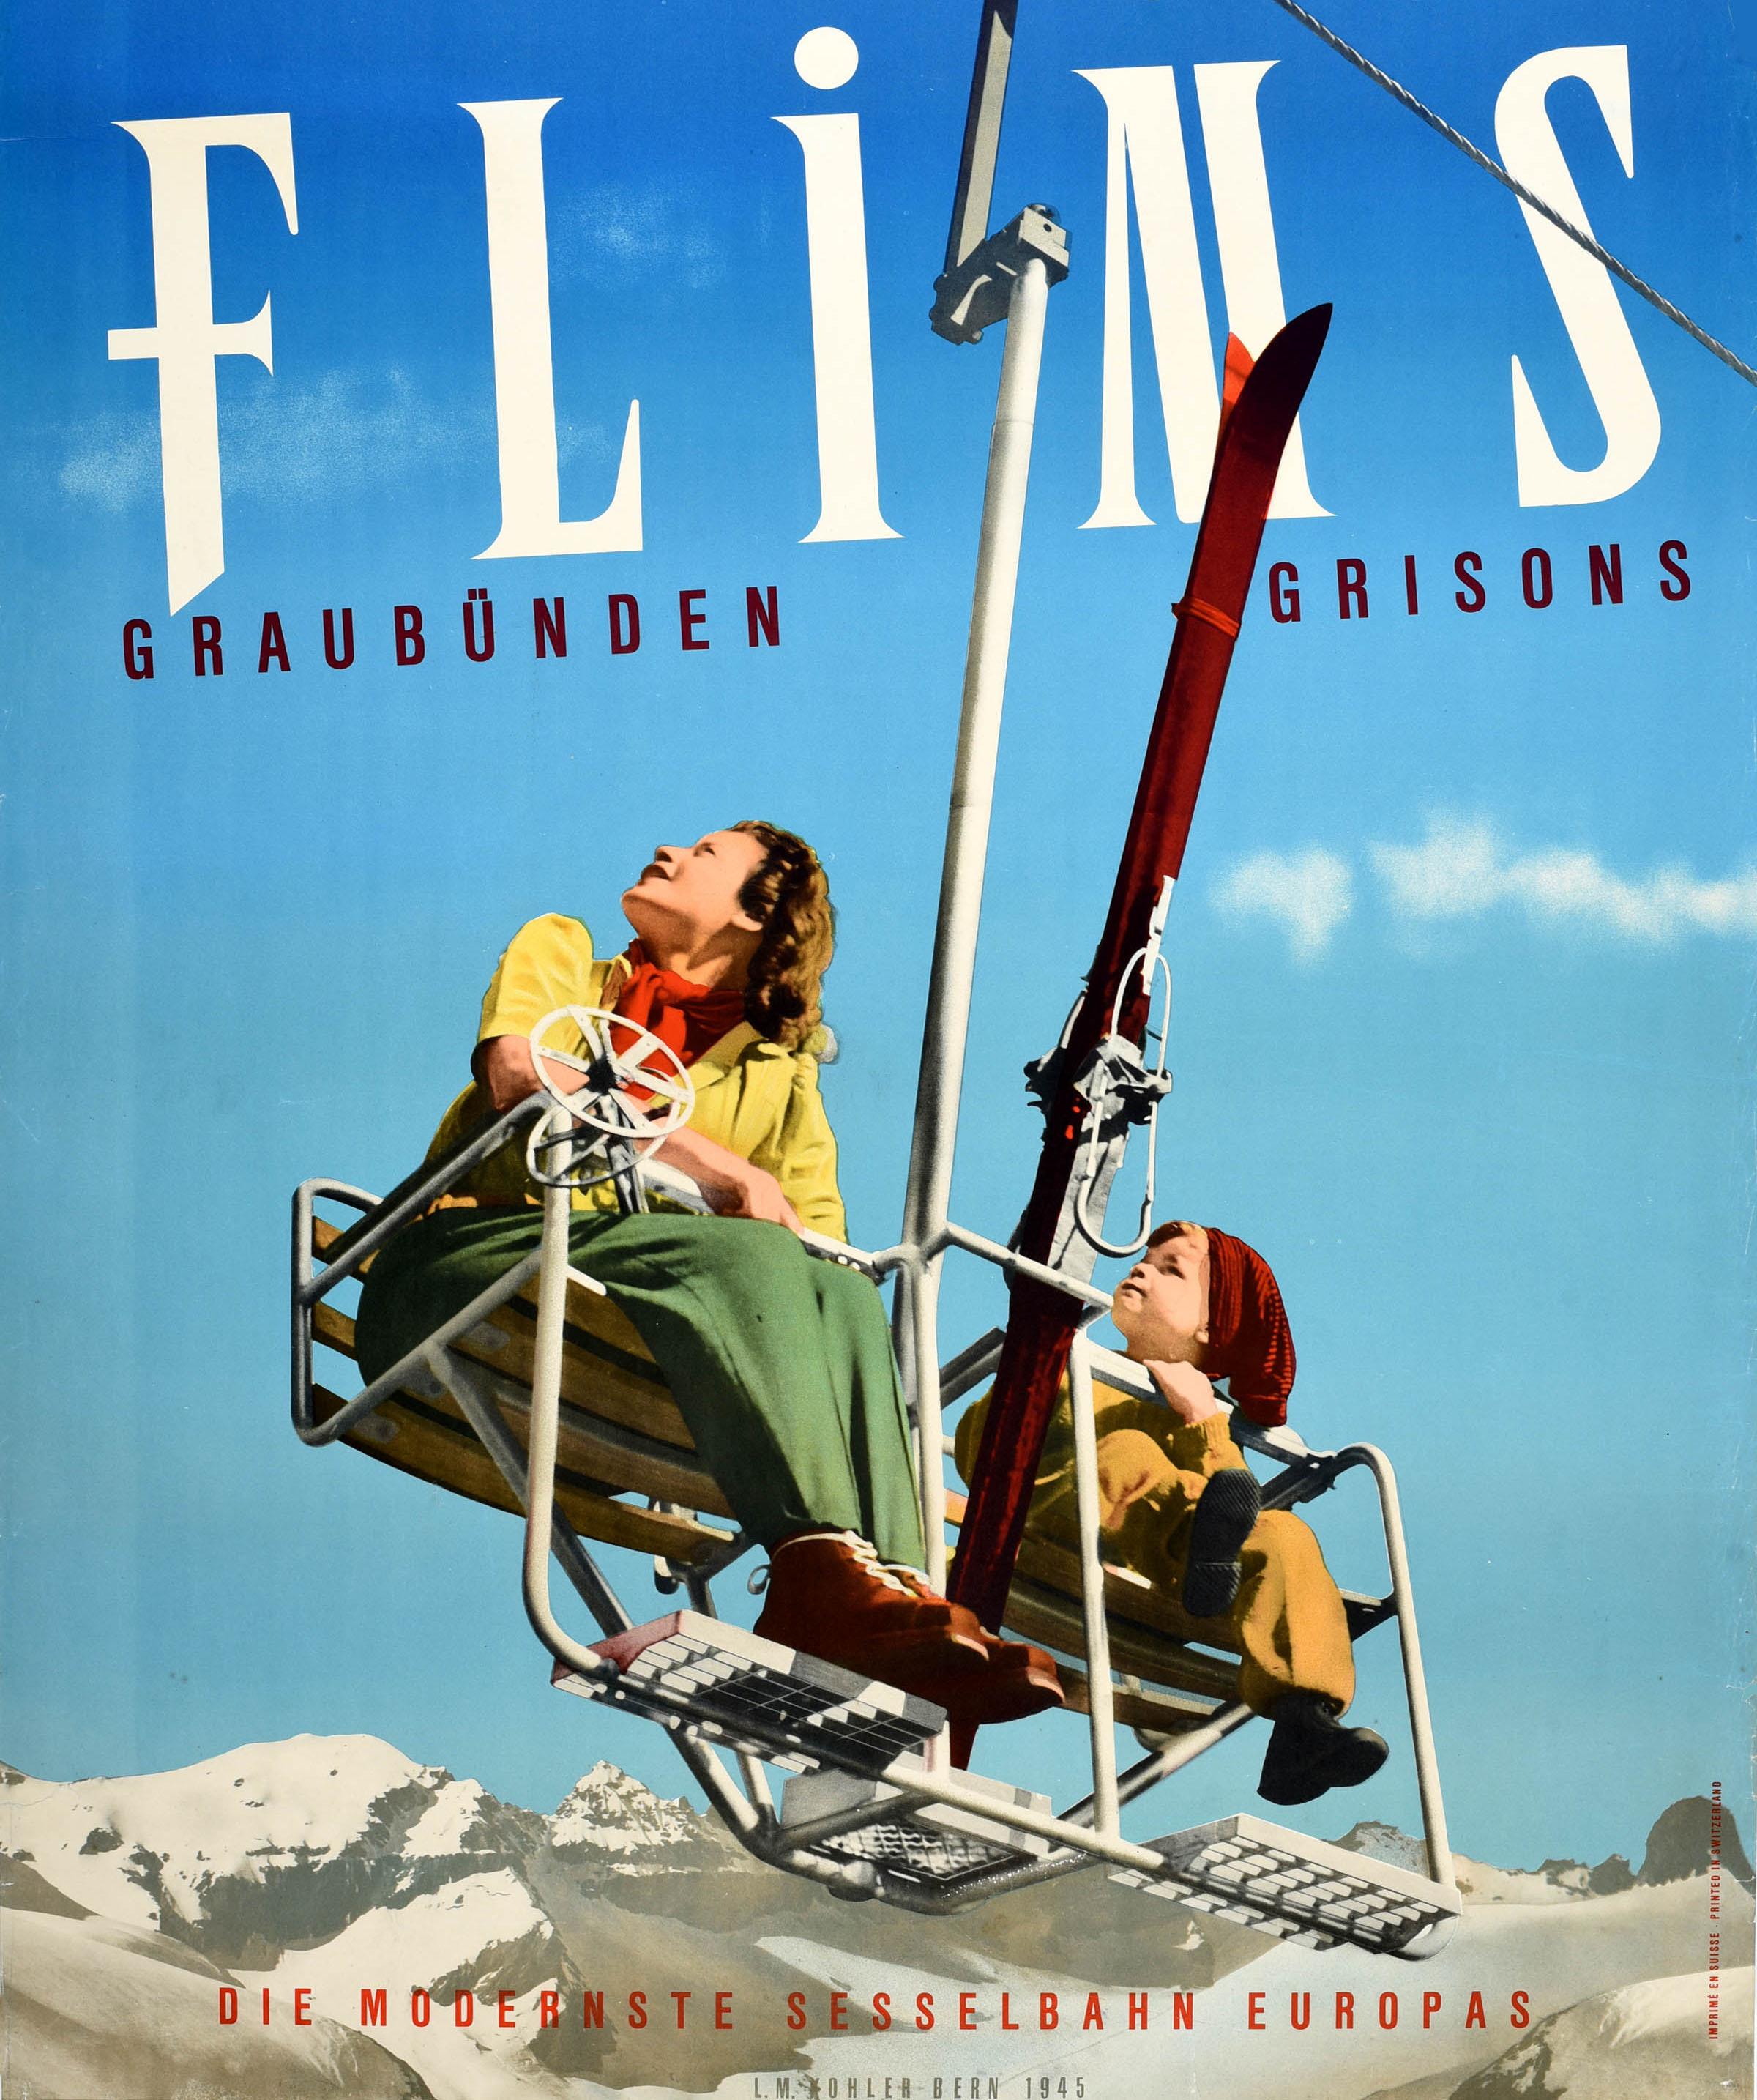 Original Vintage Winter Travel Ski Poster Flims Graubunden Grisons Switzerland - Print by Unknown